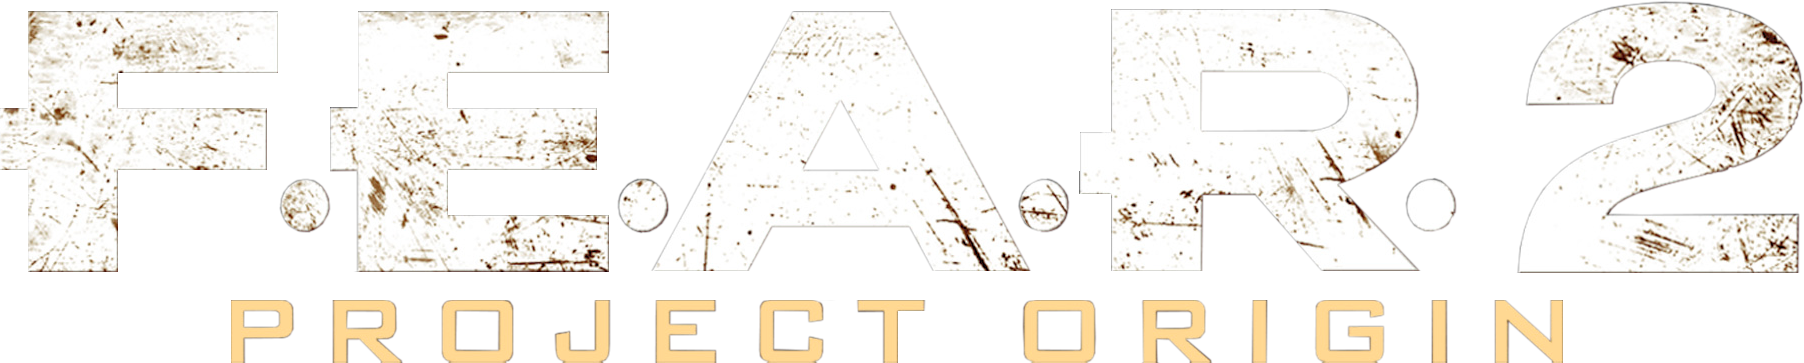 F - E - A - R - 2 - Project Origin - Clear Logo - Fear 2 Project Origin Clipart (1804x363), Png Download